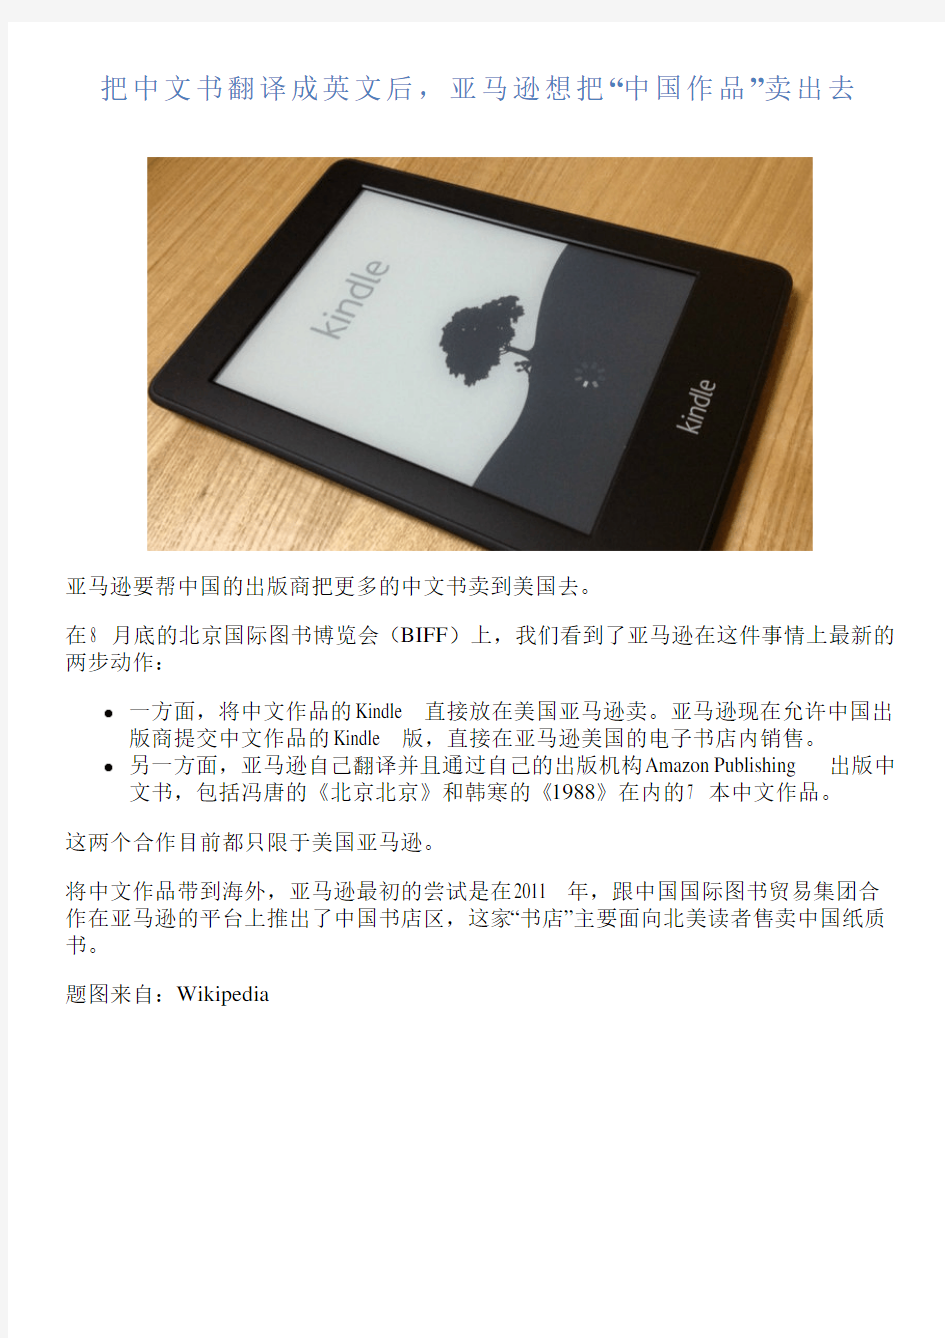 把中文书翻译成英文后,亚马逊想把“中国作品”卖出去